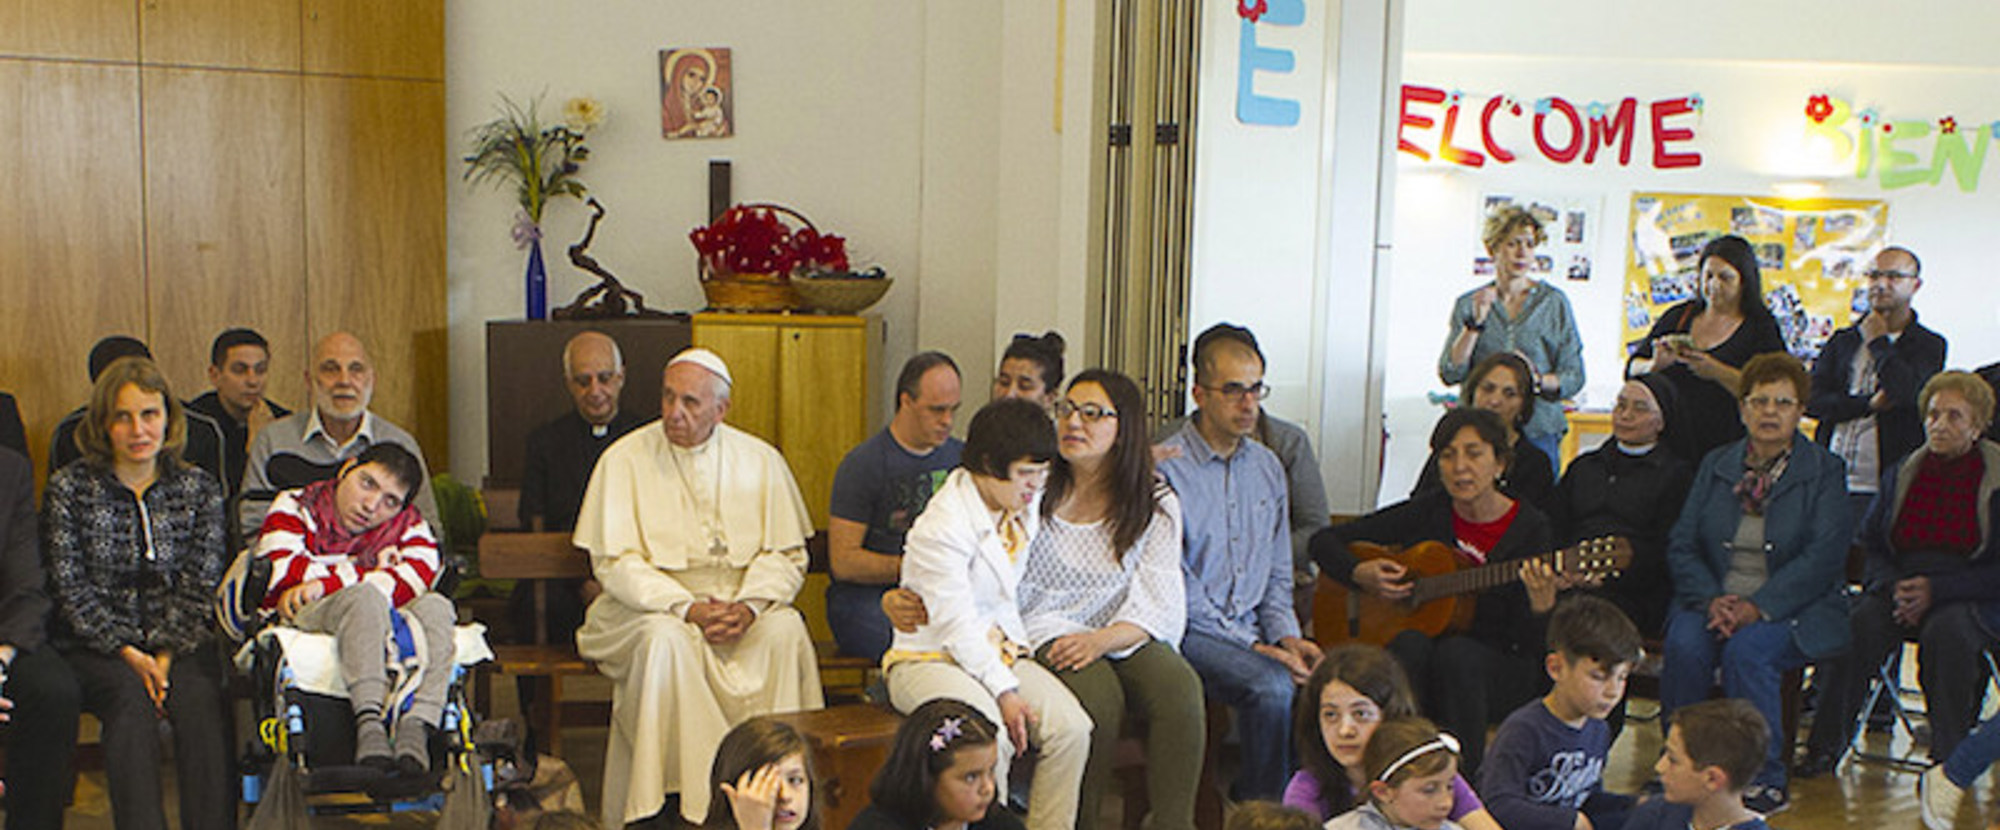 Papst Franziskus besucht am 13. Mai 2016 in Rom die Einrichtung 'Il Chicco' für behinderte und sozial benachteiligte Menschen.